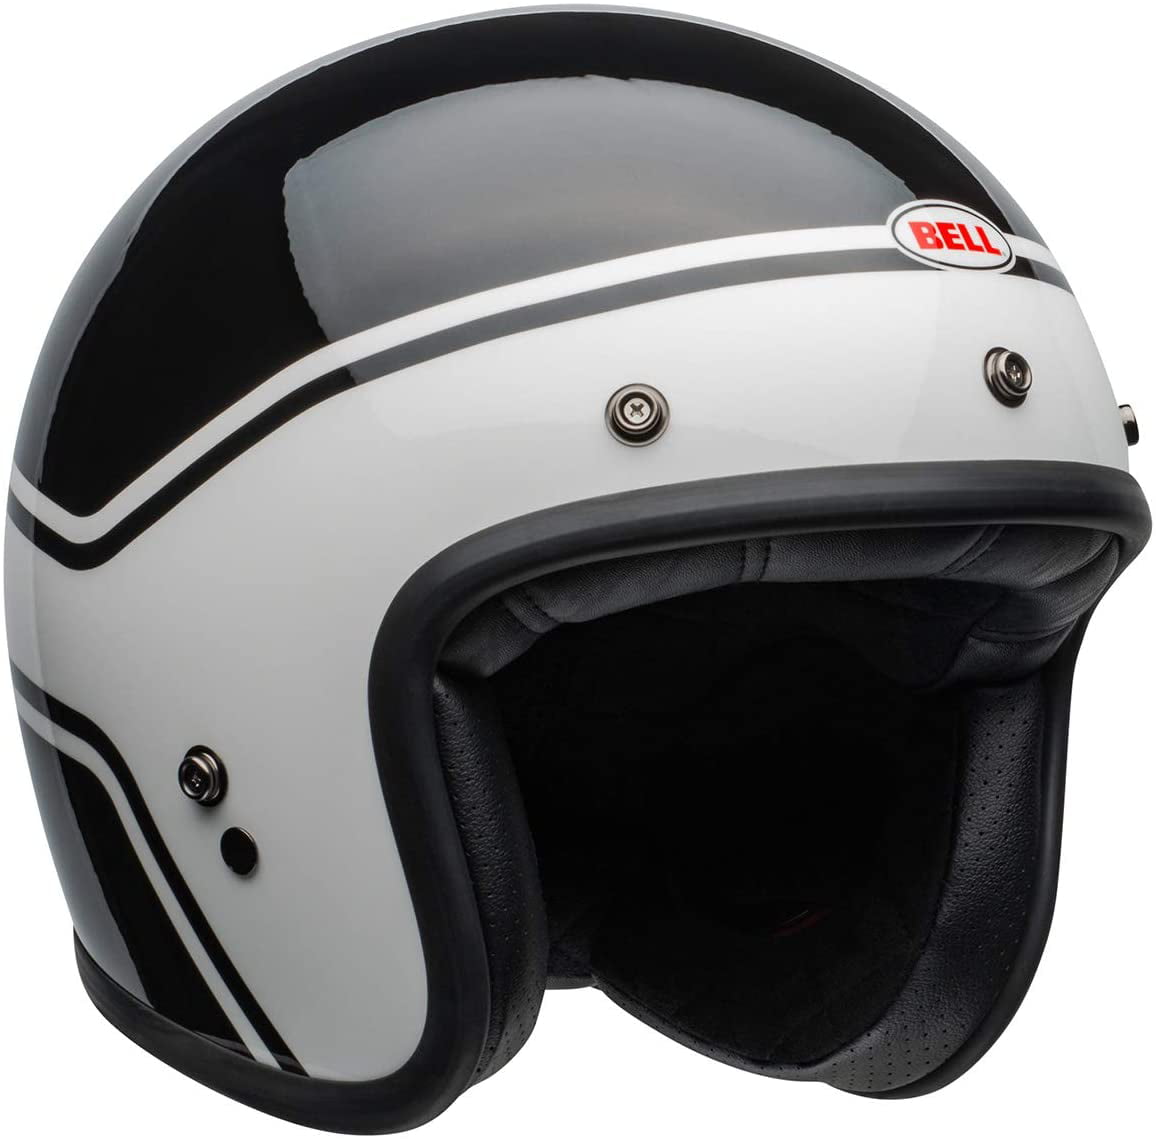 Bell 2020 Cruiser Custom 500 Adult Helmet Solid Gloss Black Motorbike Motorcycle